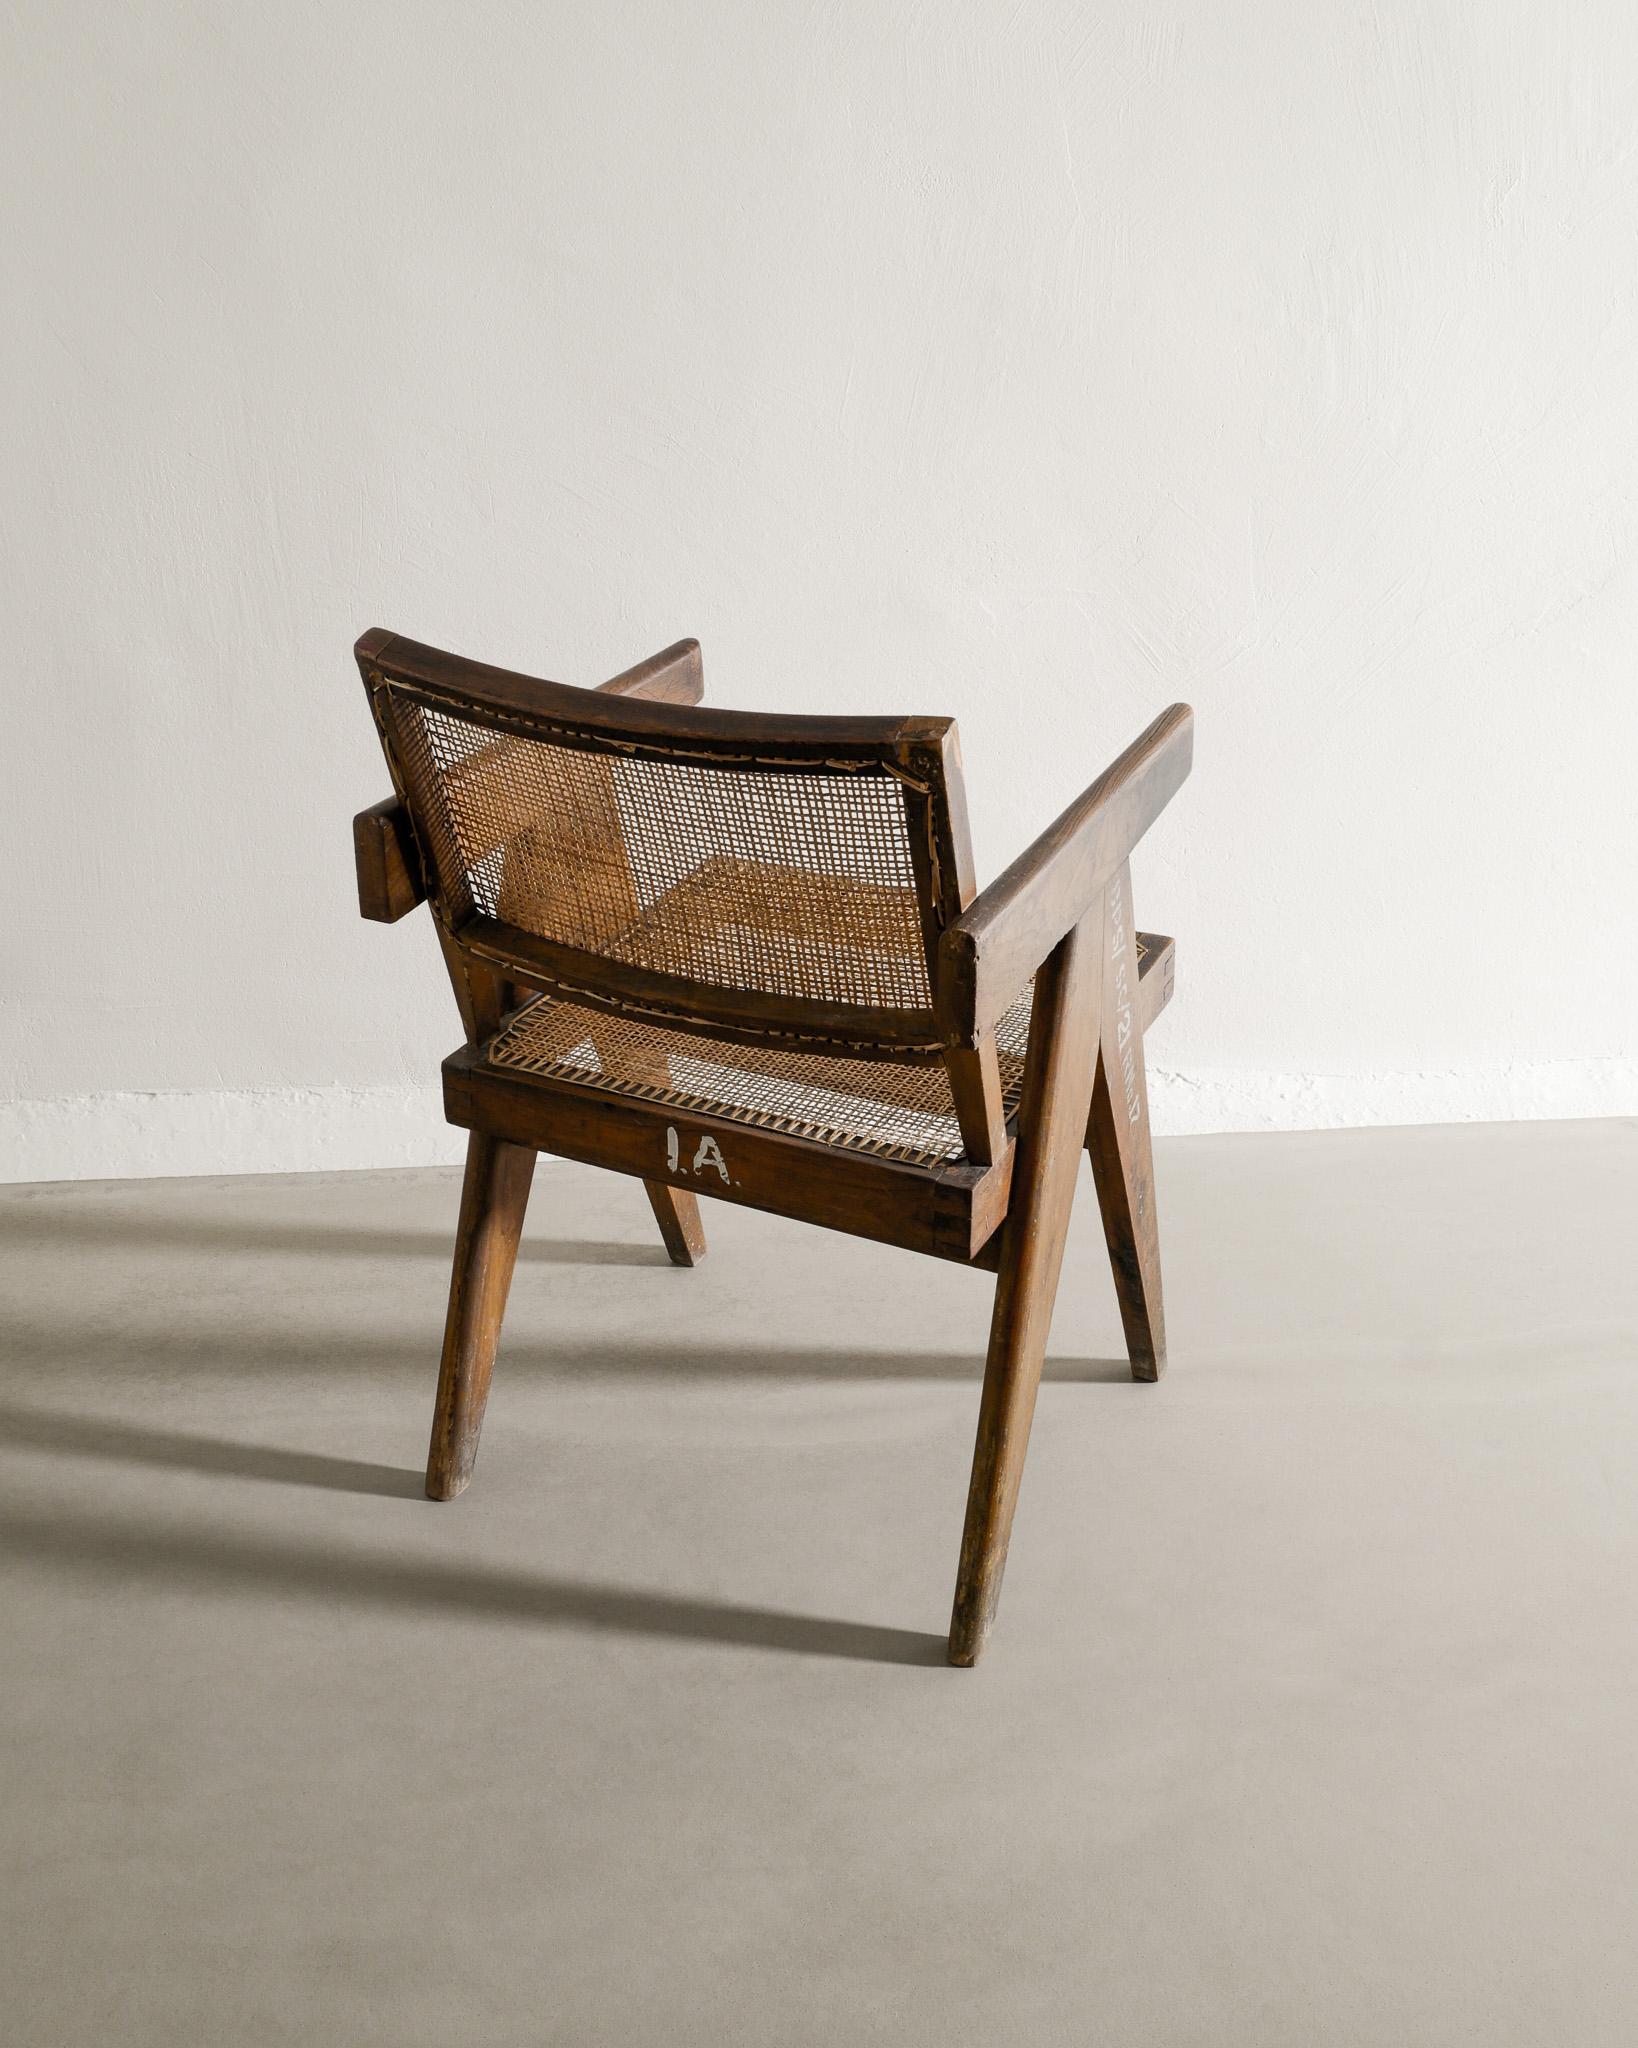 Rare chaise de bureau / salle à manger en teck et rotin de Pierre Jeanneret produite pour Chandigarh en Inde dans les années 1950. En bon état d'origine avec une belle patine et des lettres. 

Dimensions : H : 79 cm / 31.1